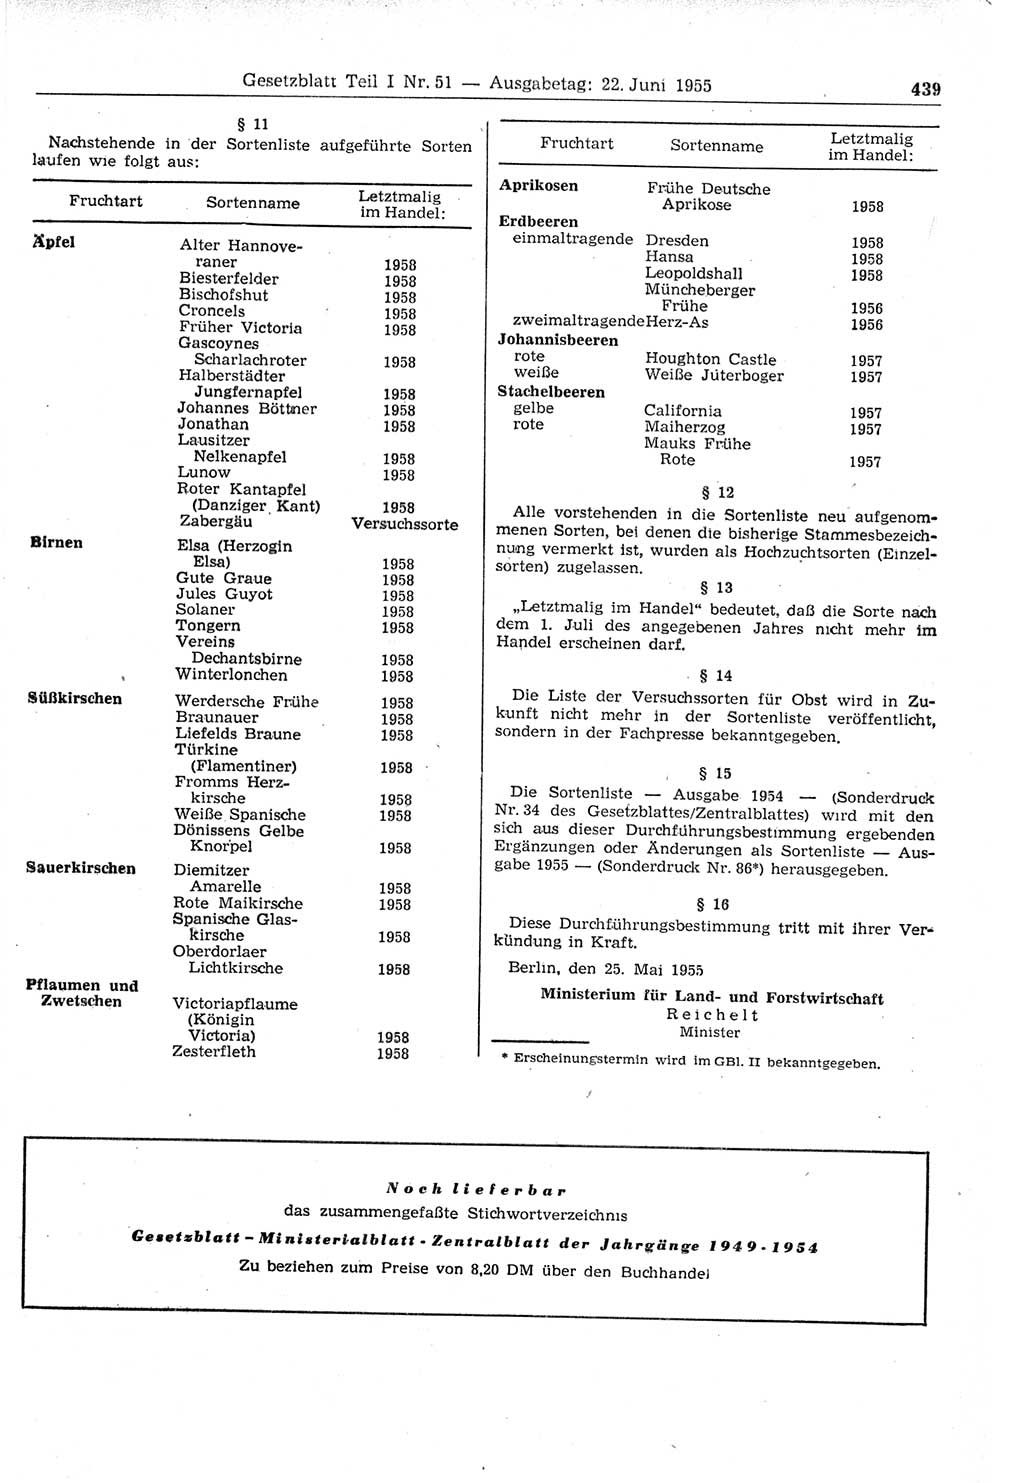 Gesetzblatt (GBl.) der Deutschen Demokratischen Republik (DDR) Teil Ⅰ 1955, Seite 439 (GBl. DDR Ⅰ 1955, S. 439)